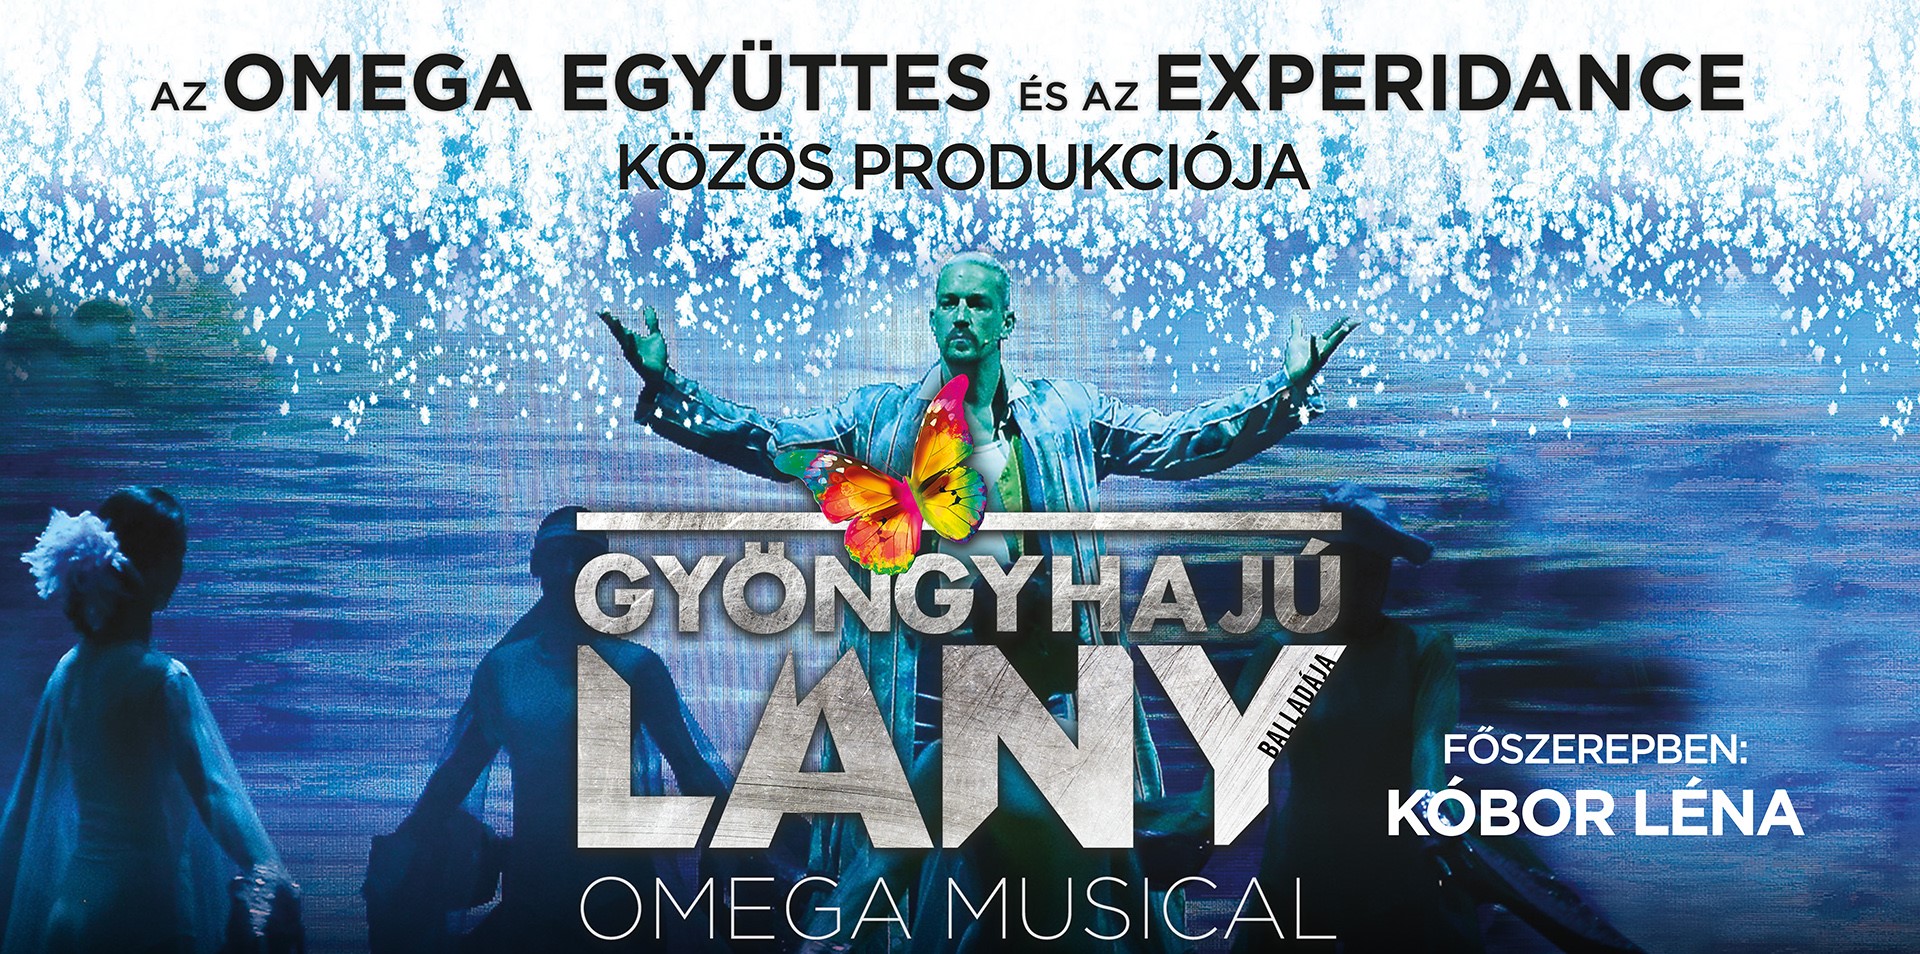 Holnap érkezik az Omega-musical Gorsiumba – érdemes lecsapni az utolsó jegyekre